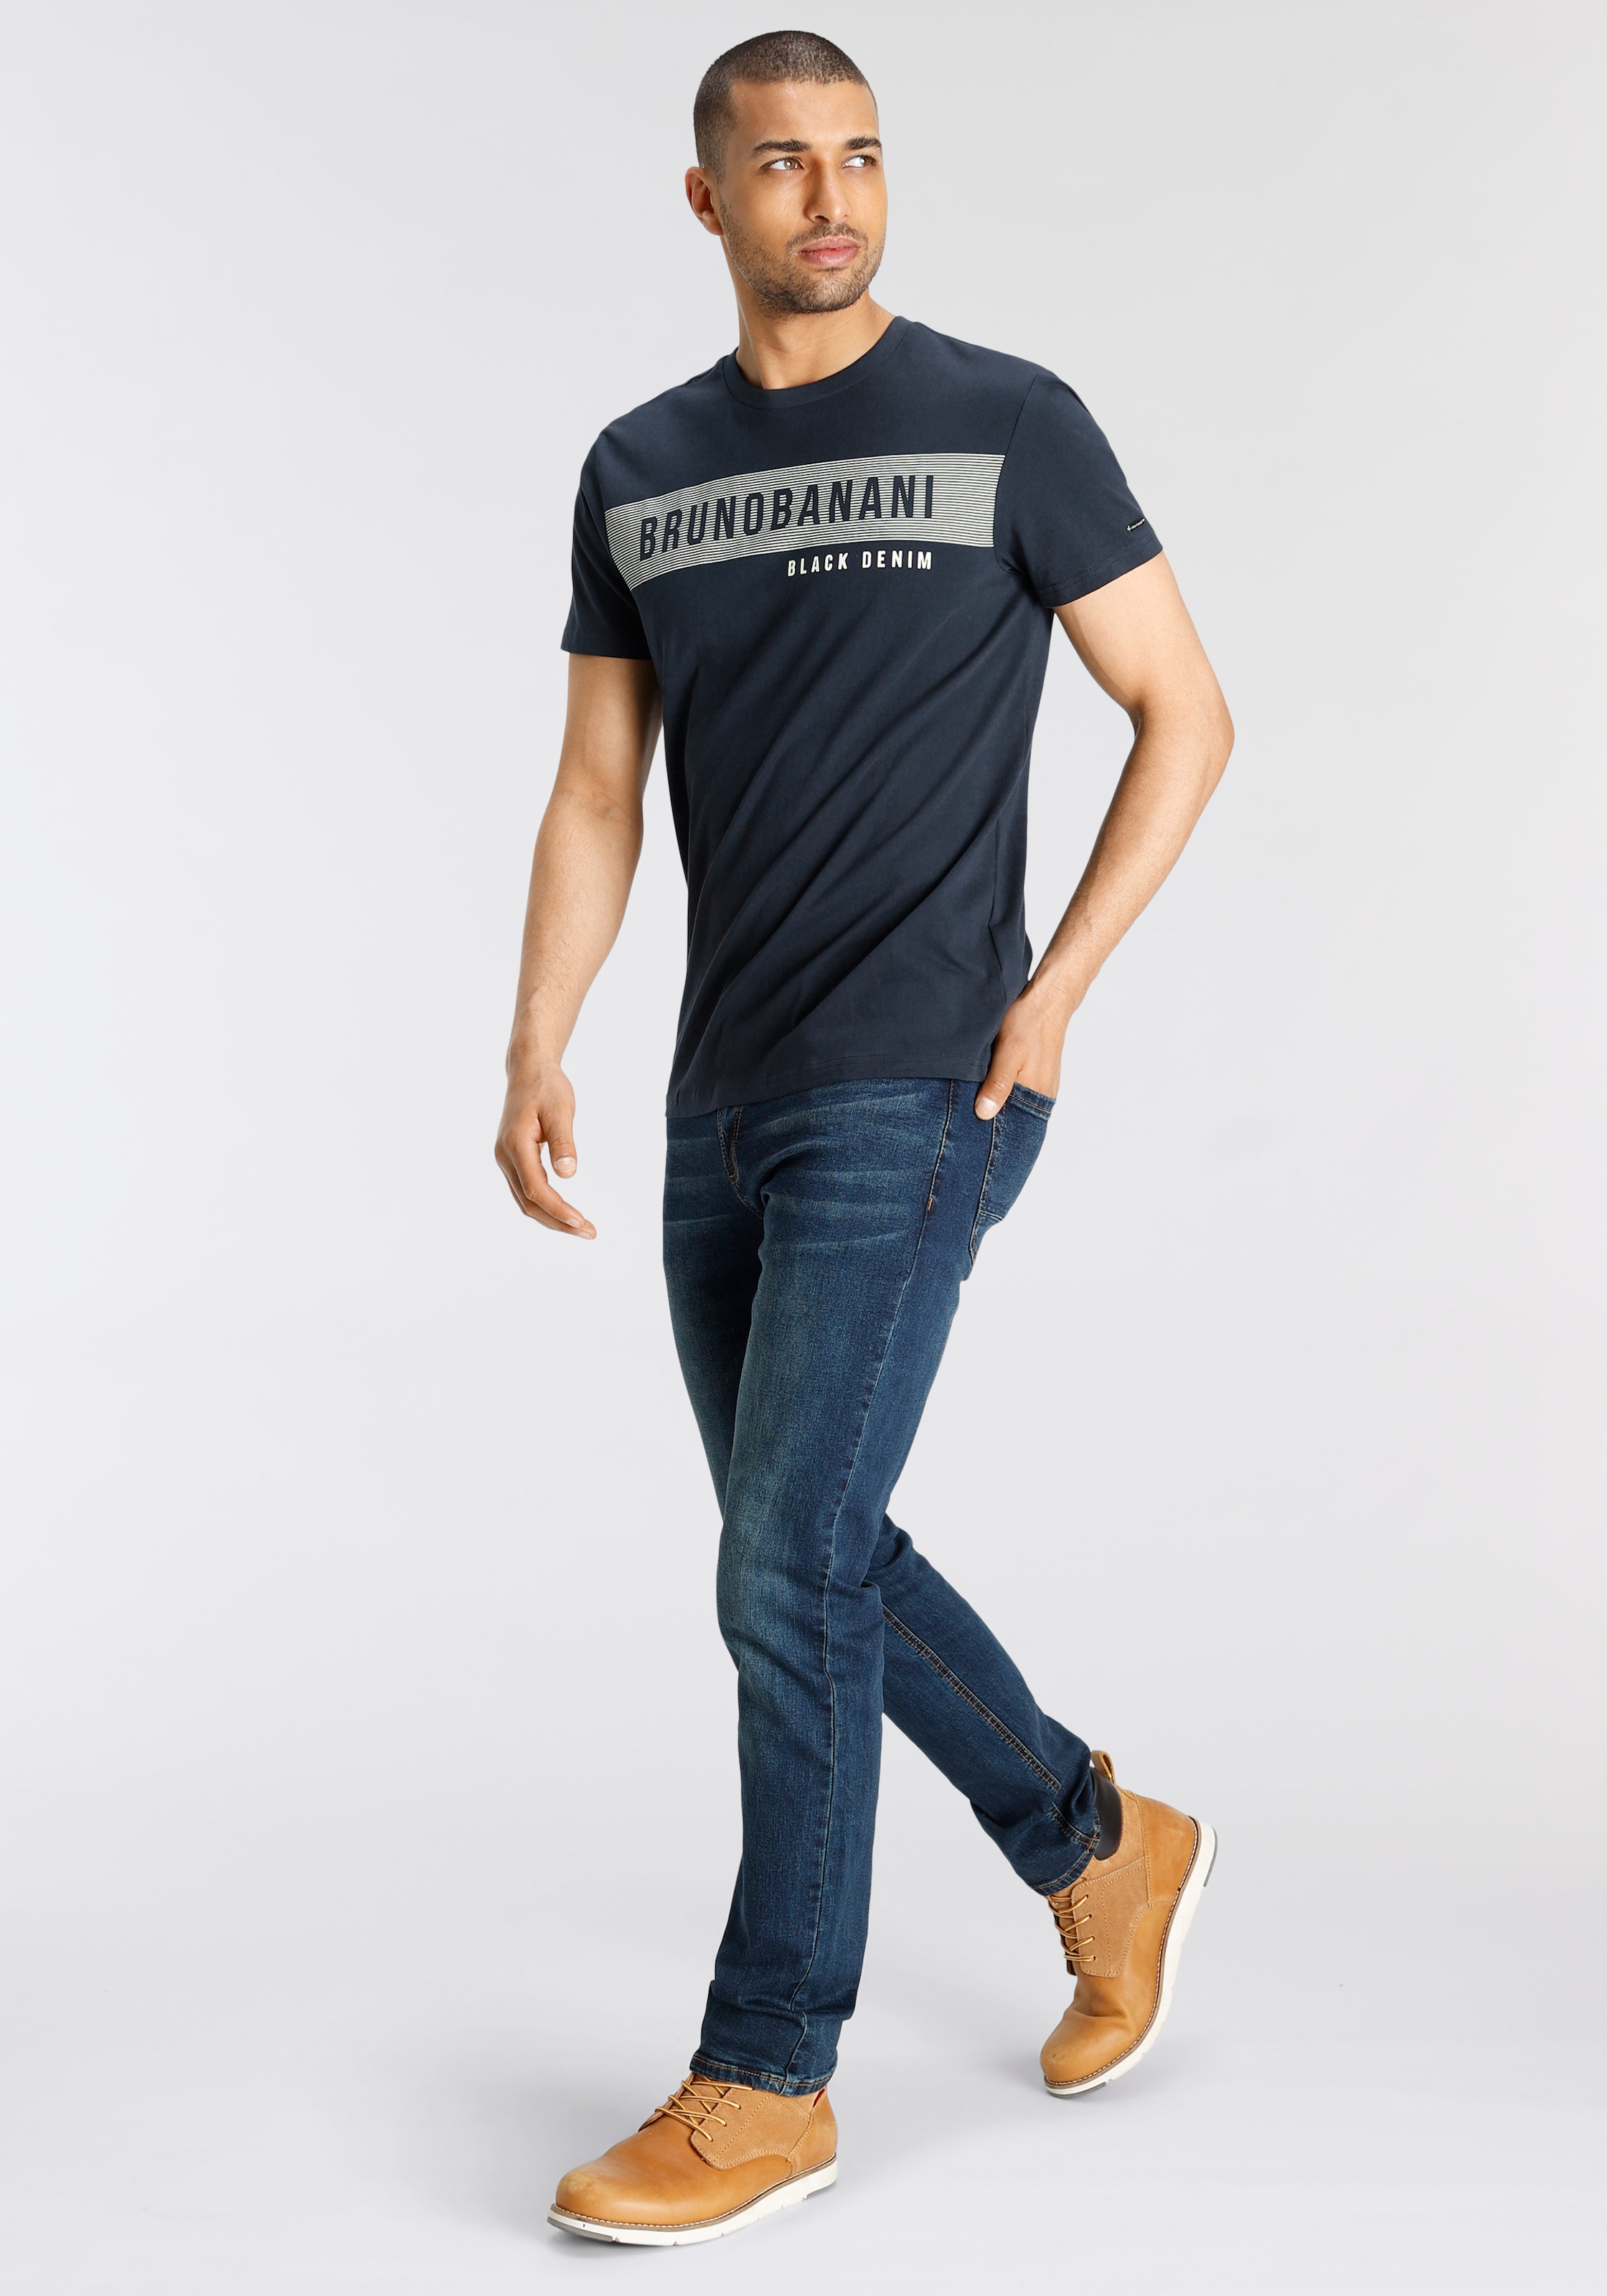 Bruno Banani T-Shirt, Markenprint mit bei shoppen online OTTO